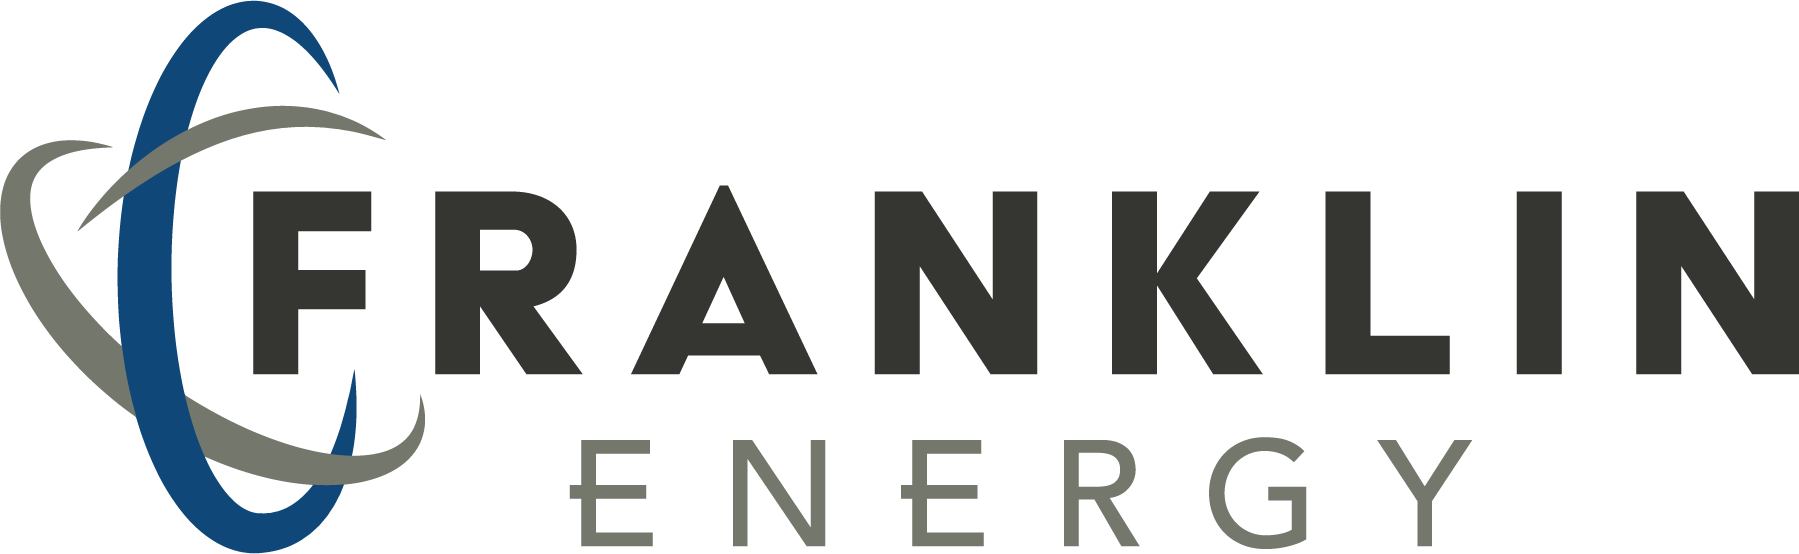 Franklin Energy - Franklin Energy Logo Transparent (1799x554), Png Download